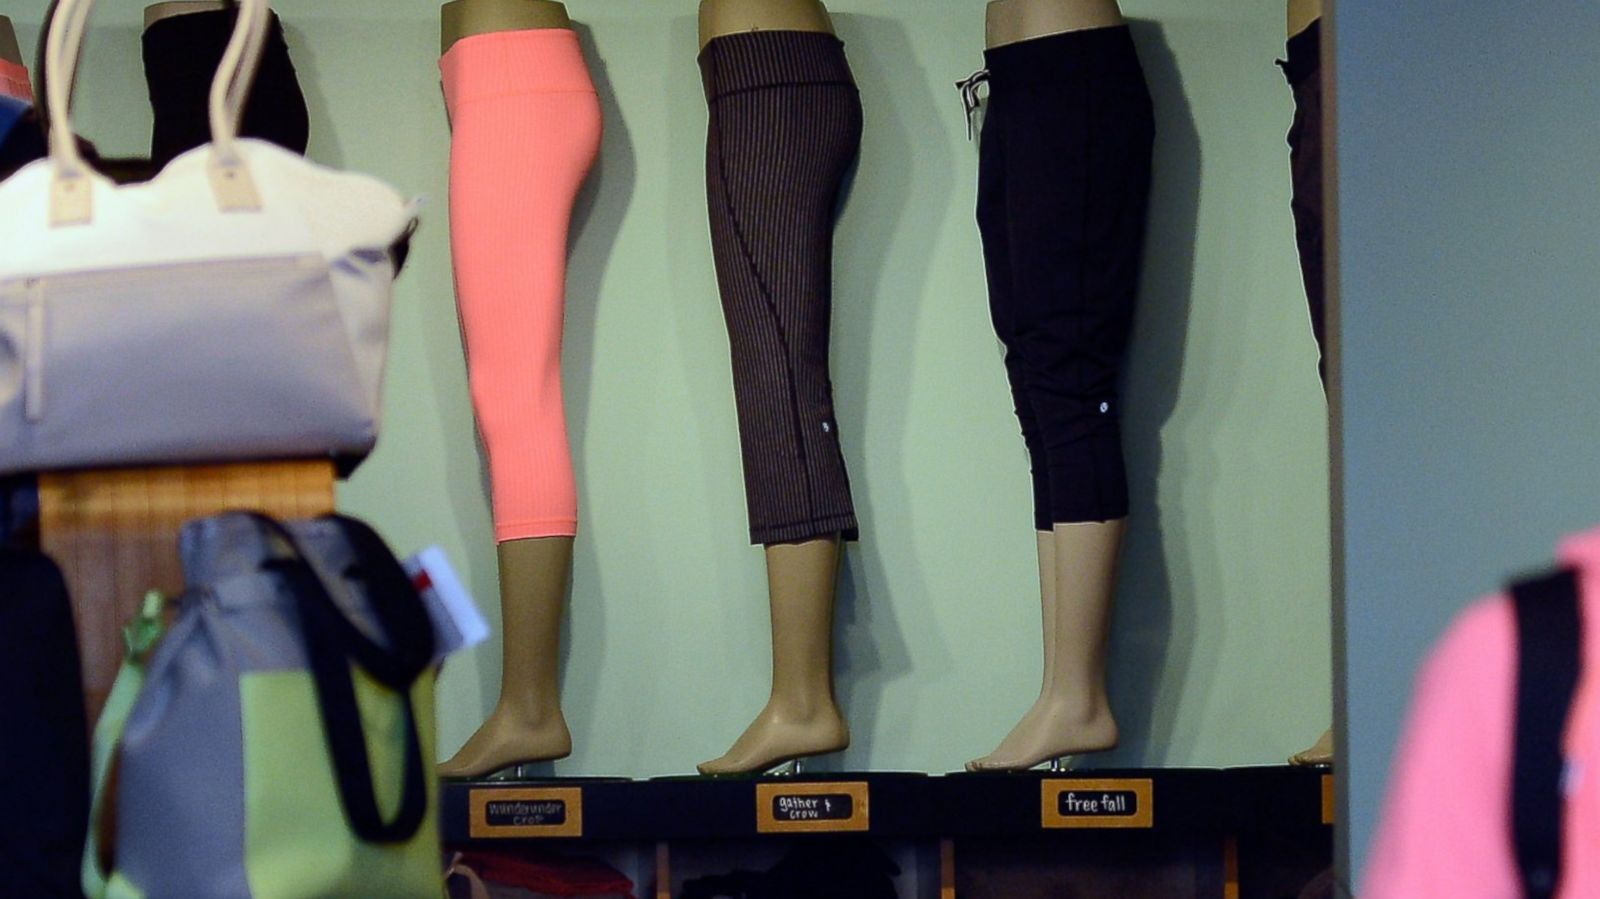 Lululemon Founder Chip Wilson Blames Women's Bodies for Yoga Pant